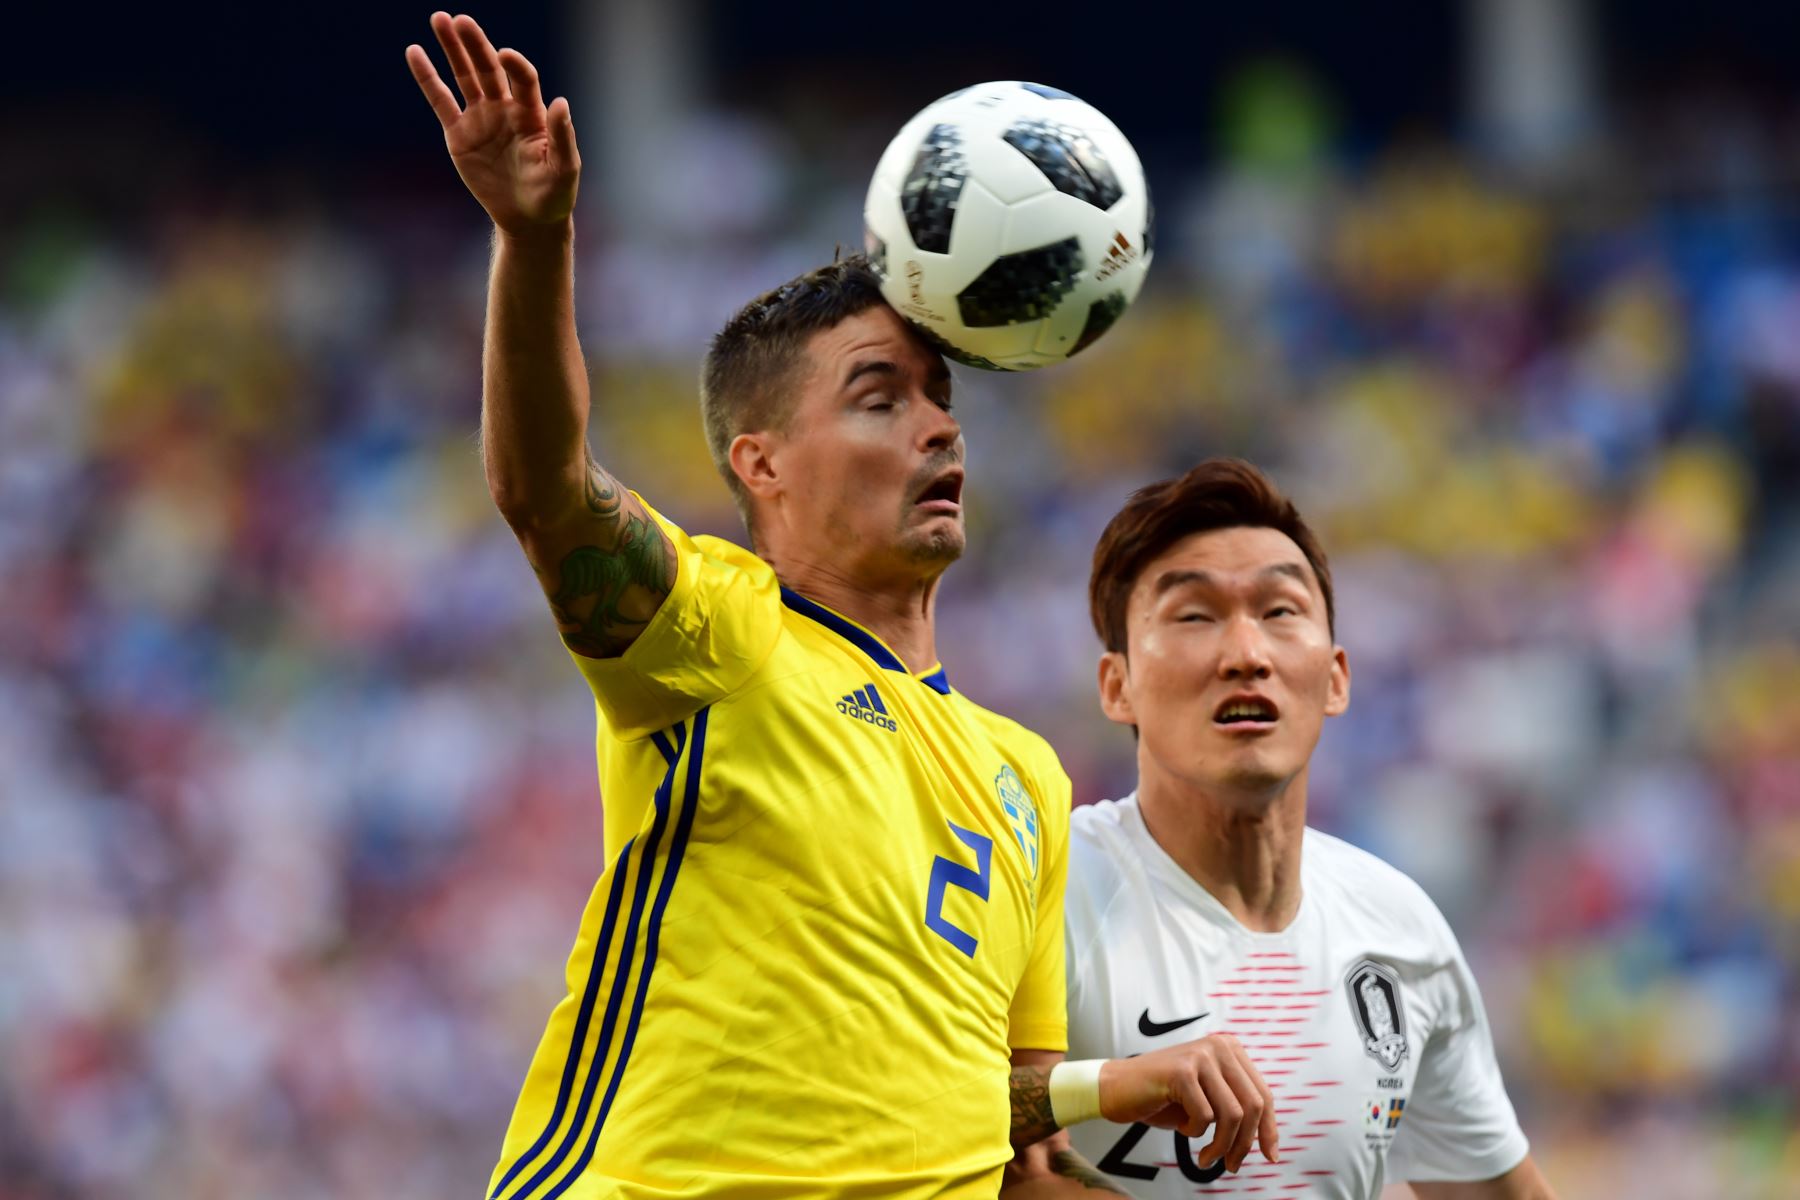 El defensa sueco Mikael Lustig (L) compite por el cabezazo con el defensa surcoreano Jang Hyun-soo durante el partido de fútbol del Grupo F de la Copa Mundial Rusia 2018 entre Suecia y Corea del Sur en el Estadio Nizhny Novgorod. AFP